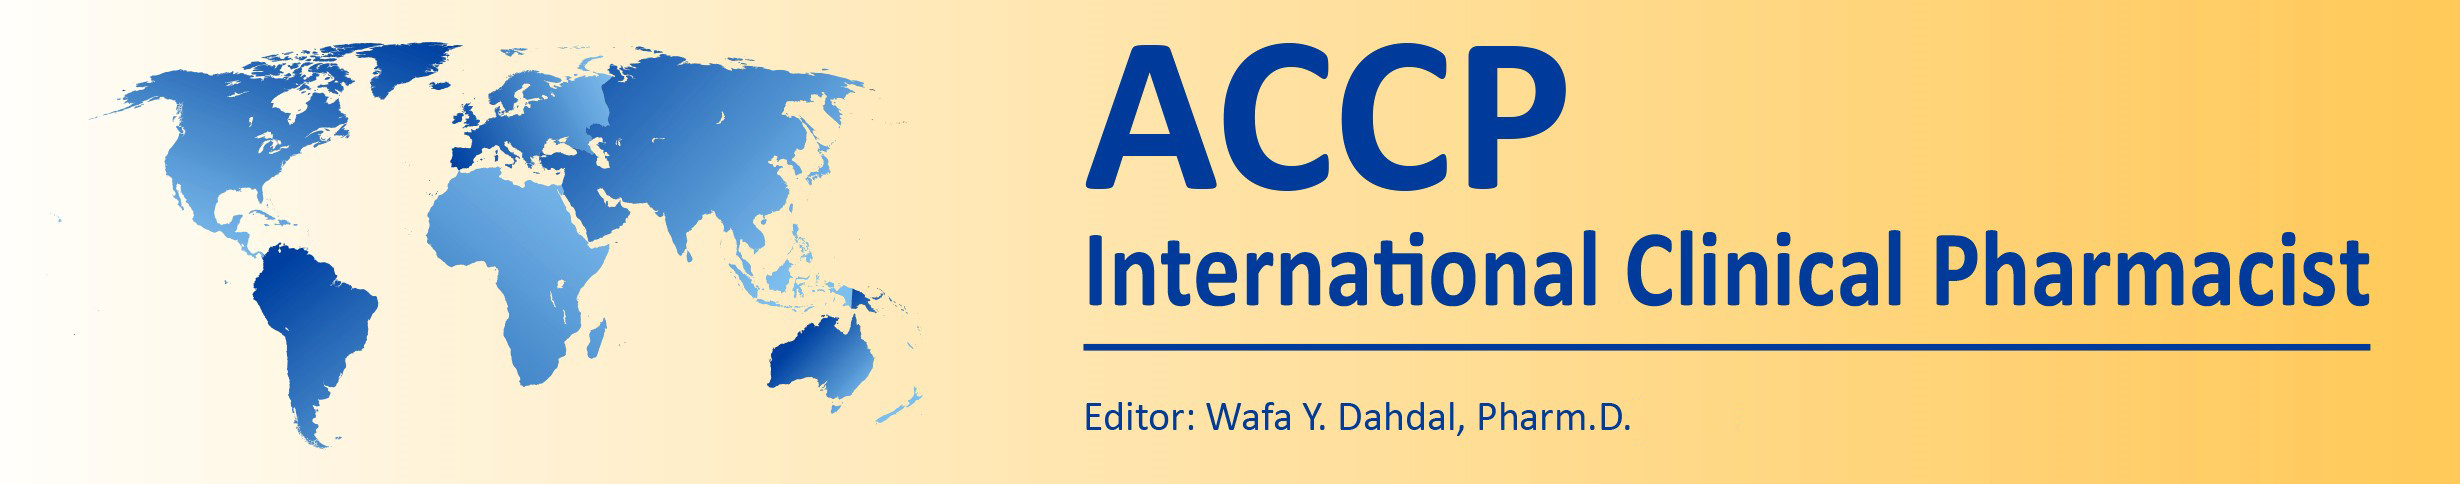 ACCP International Clinical Pharmacist